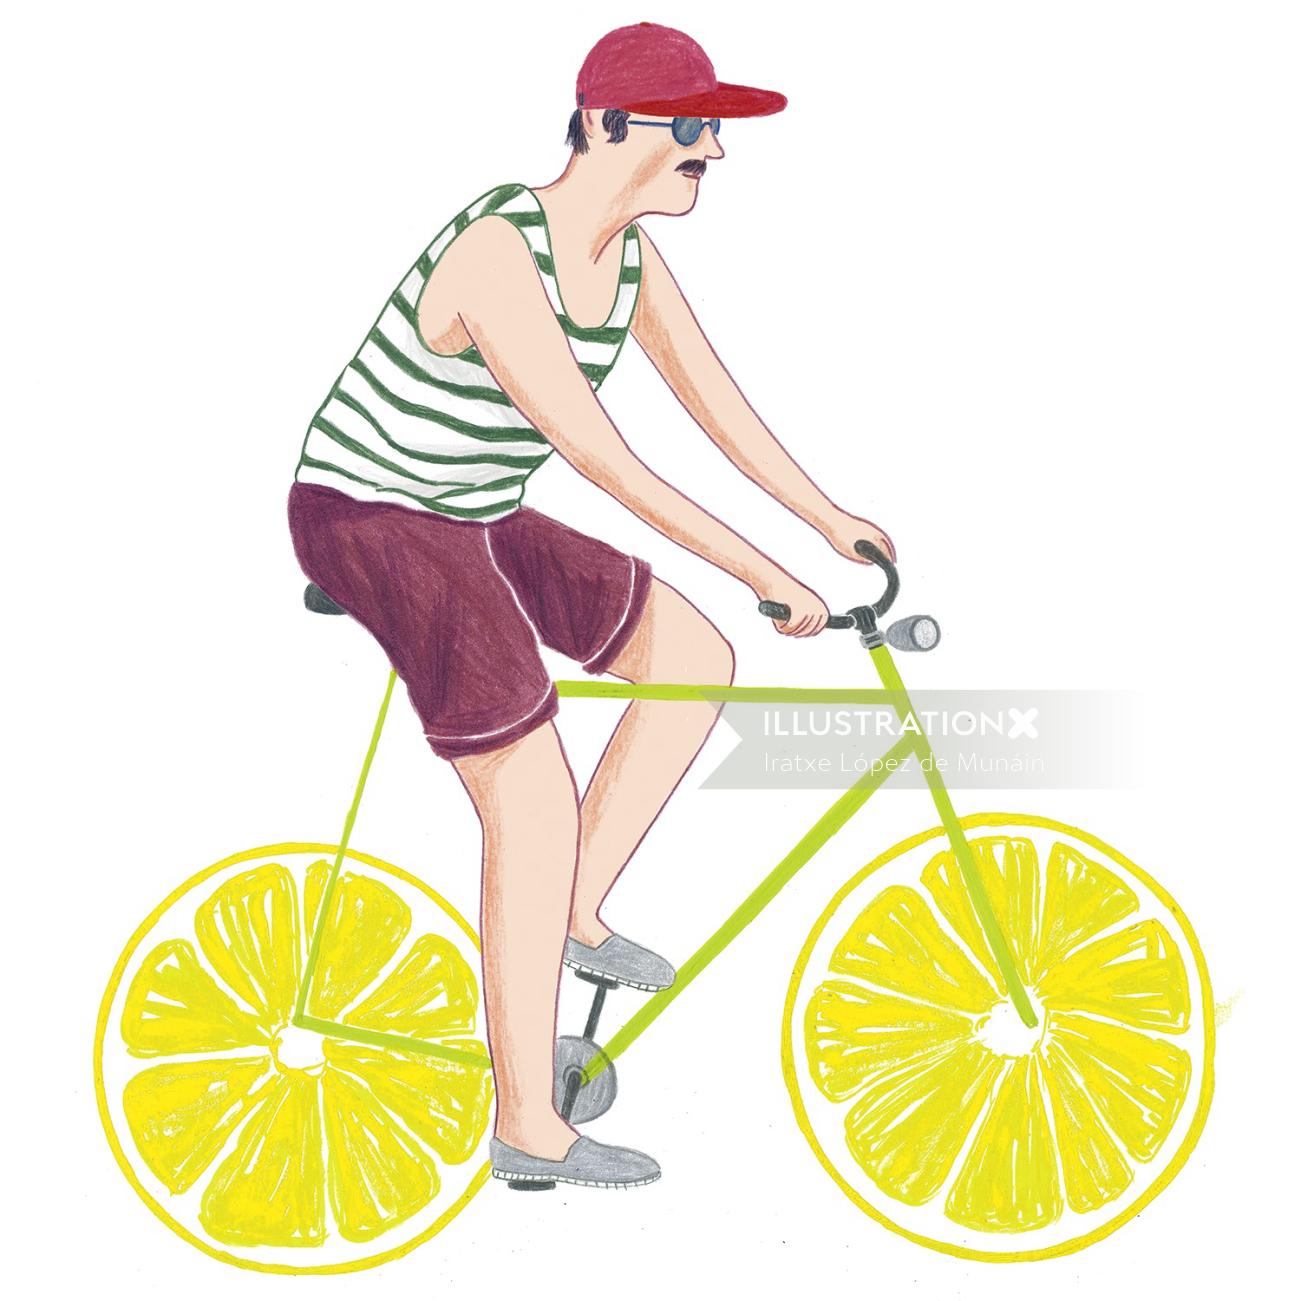 Fashion man riding lemon cycle